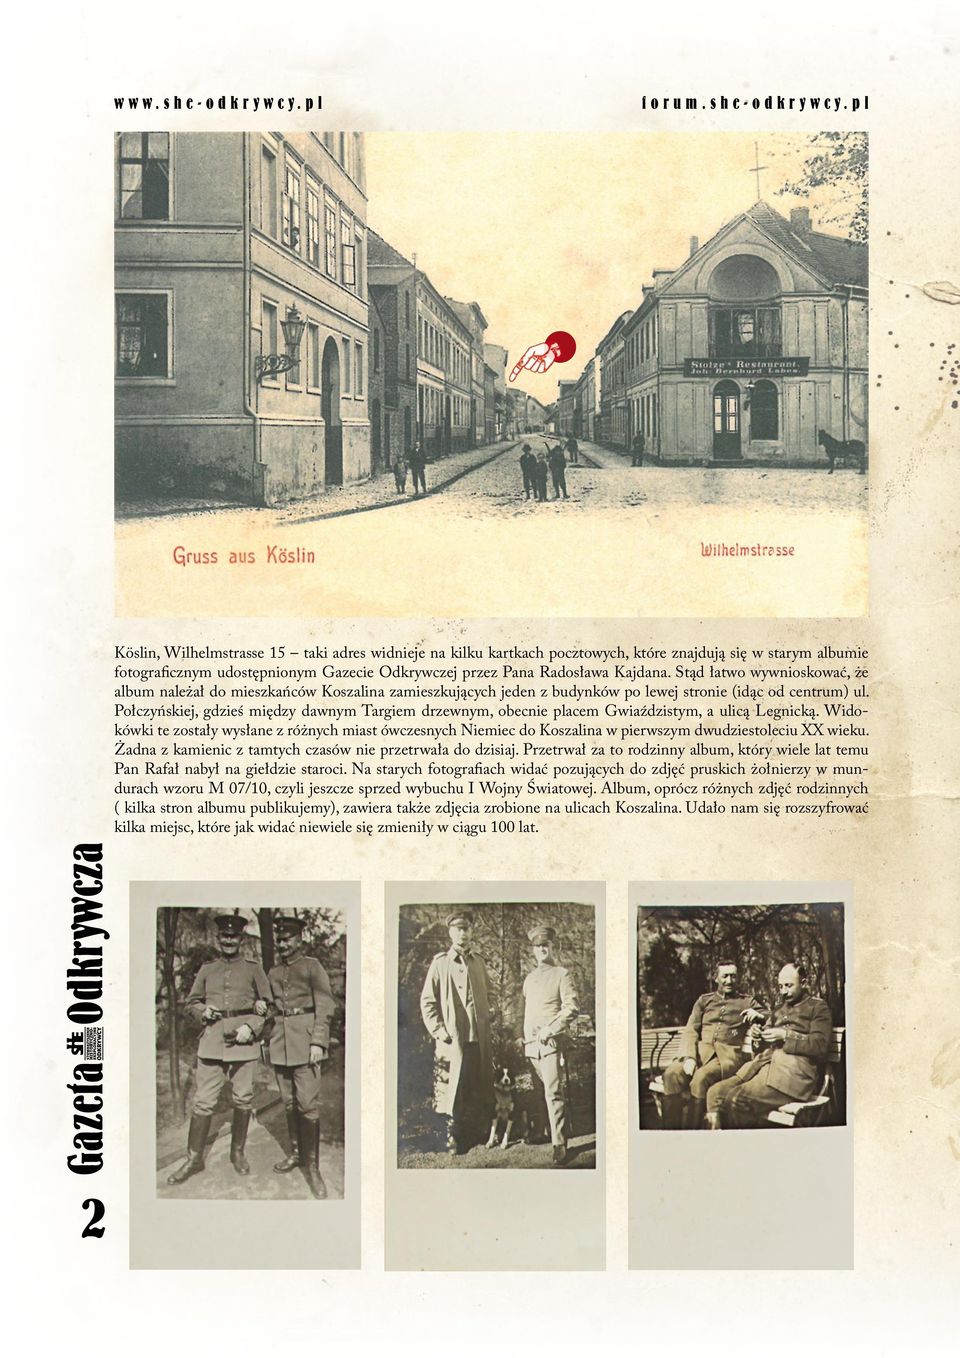 pl Köslin, Wilhelmstrasse 15 taki adres widnieje na kilku kartkach pocztowych, które znajdują się w starym albumie fotograficznym udostępnionym Gazecie Odkrywczej przez Pana Radosława Kajdana.